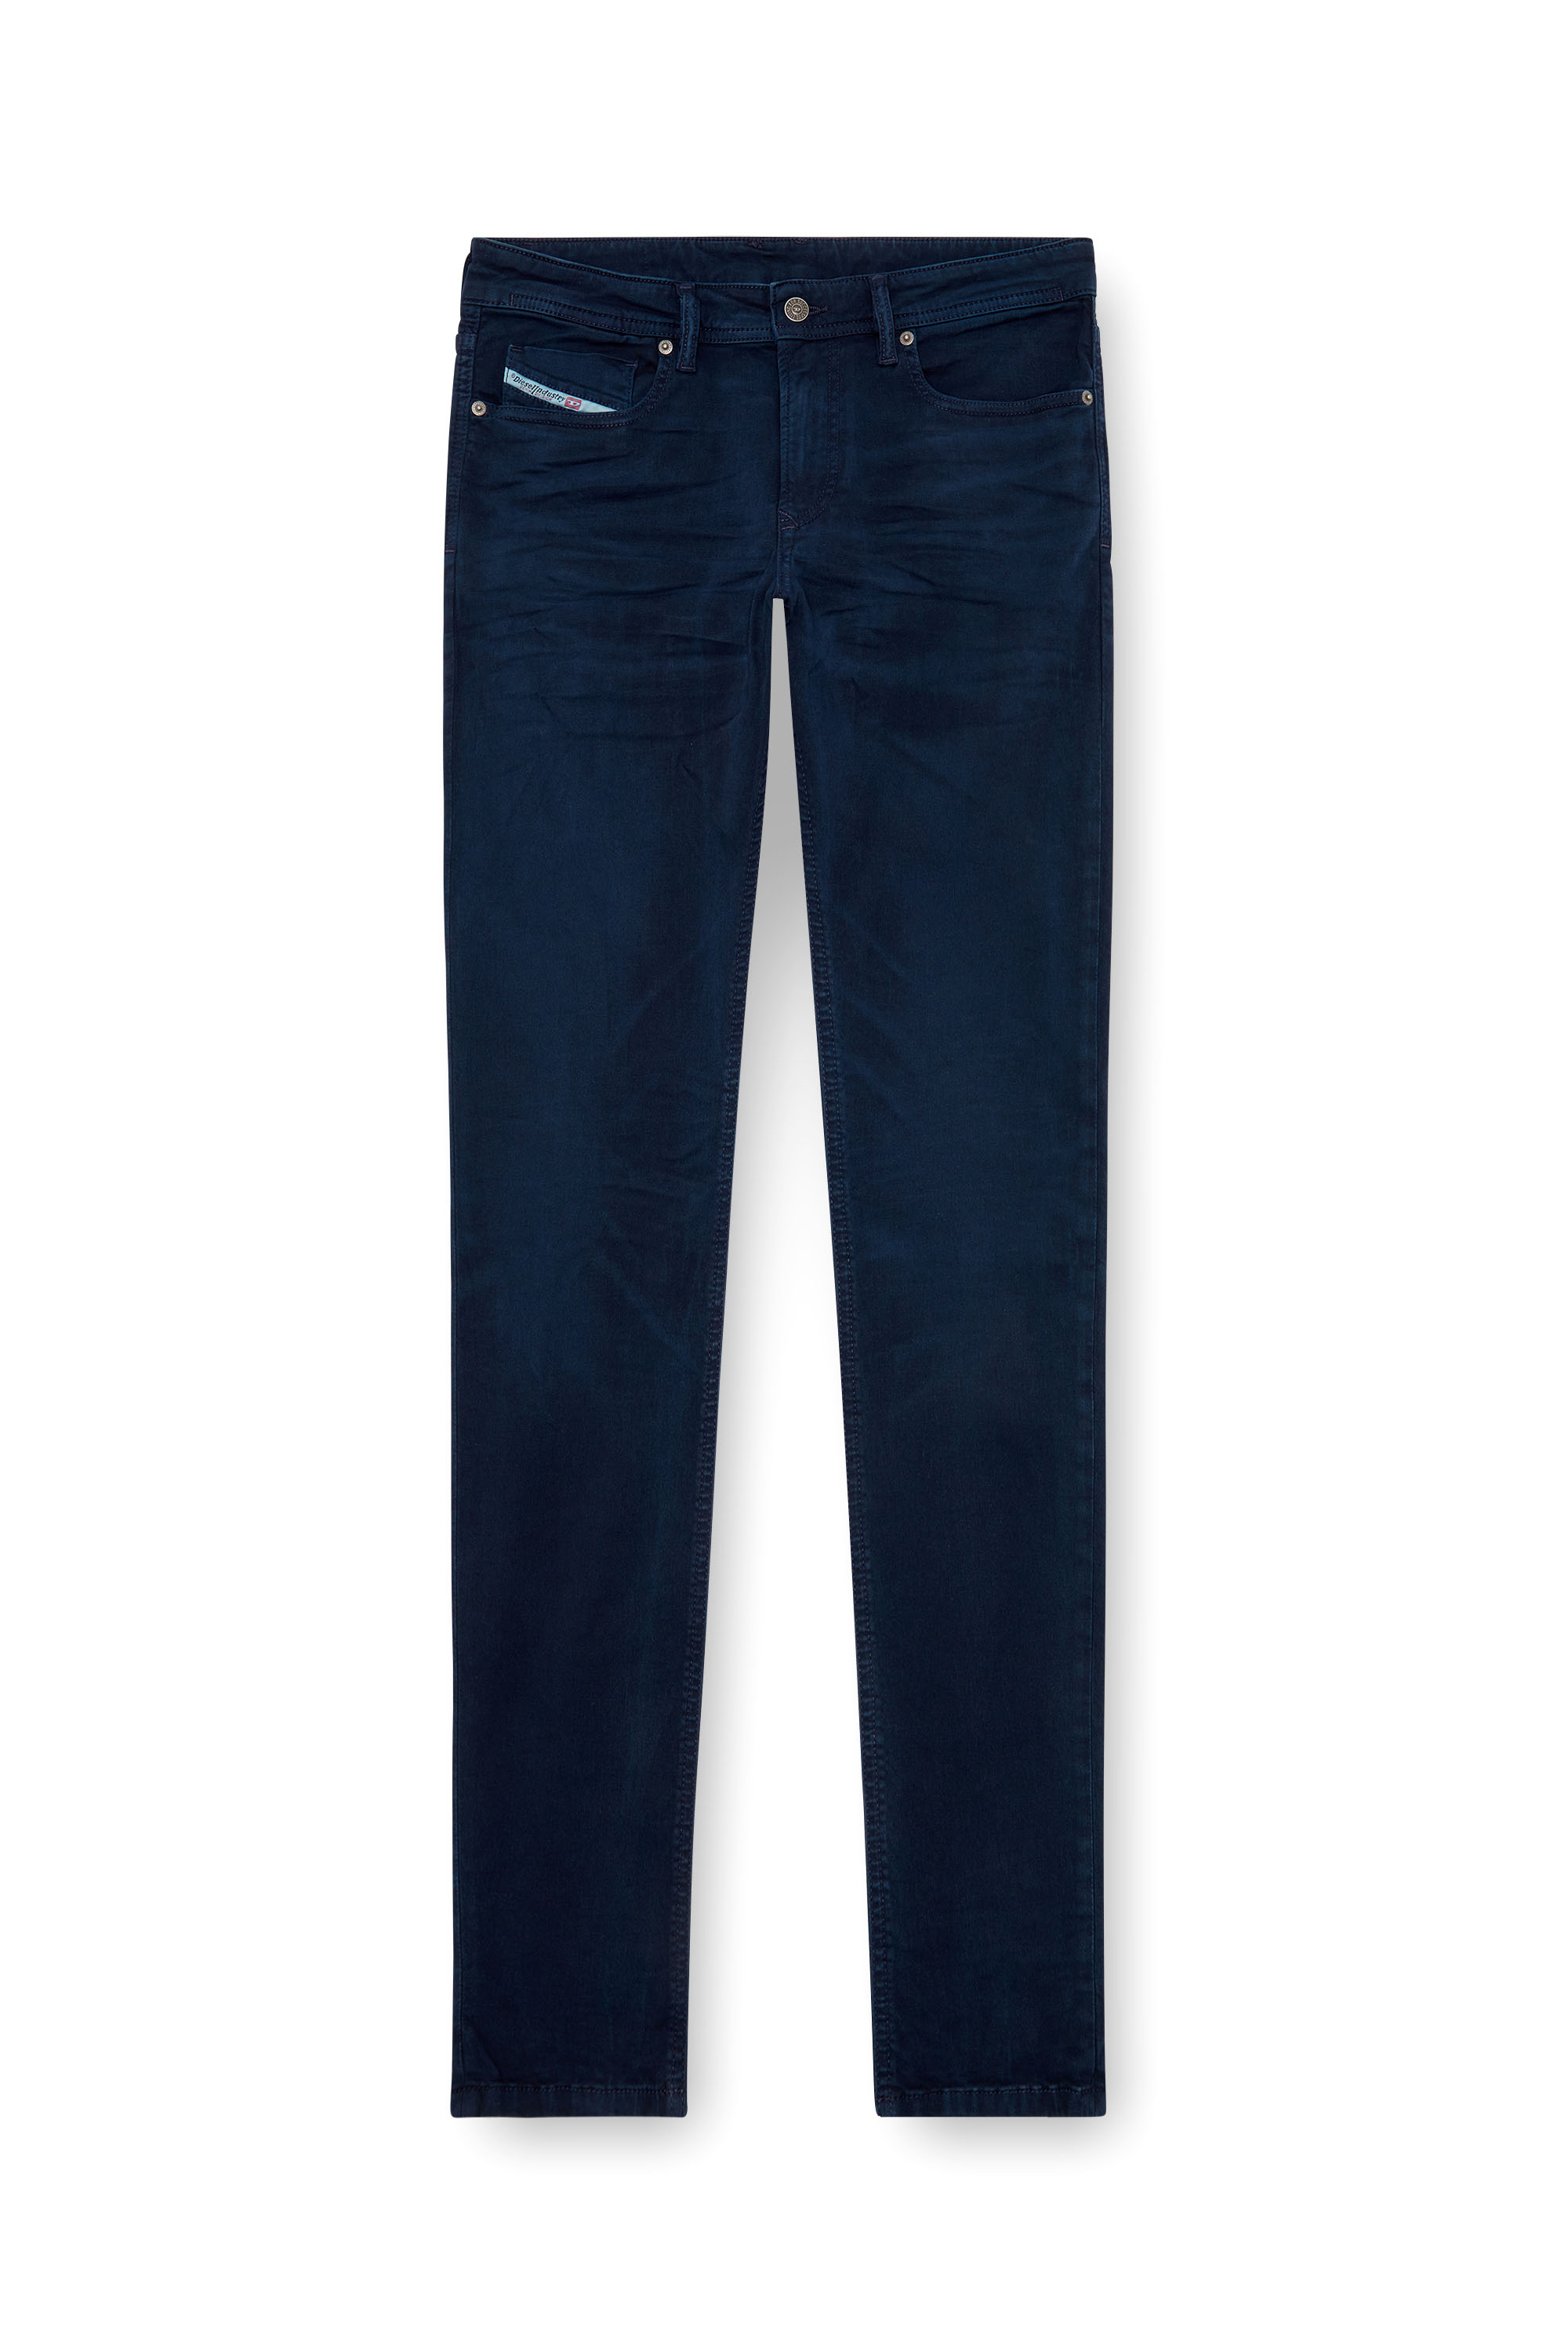 Diesel - Skinny Jeans 1979 Sleenker 0ENAK, Dark Blue - Image 3